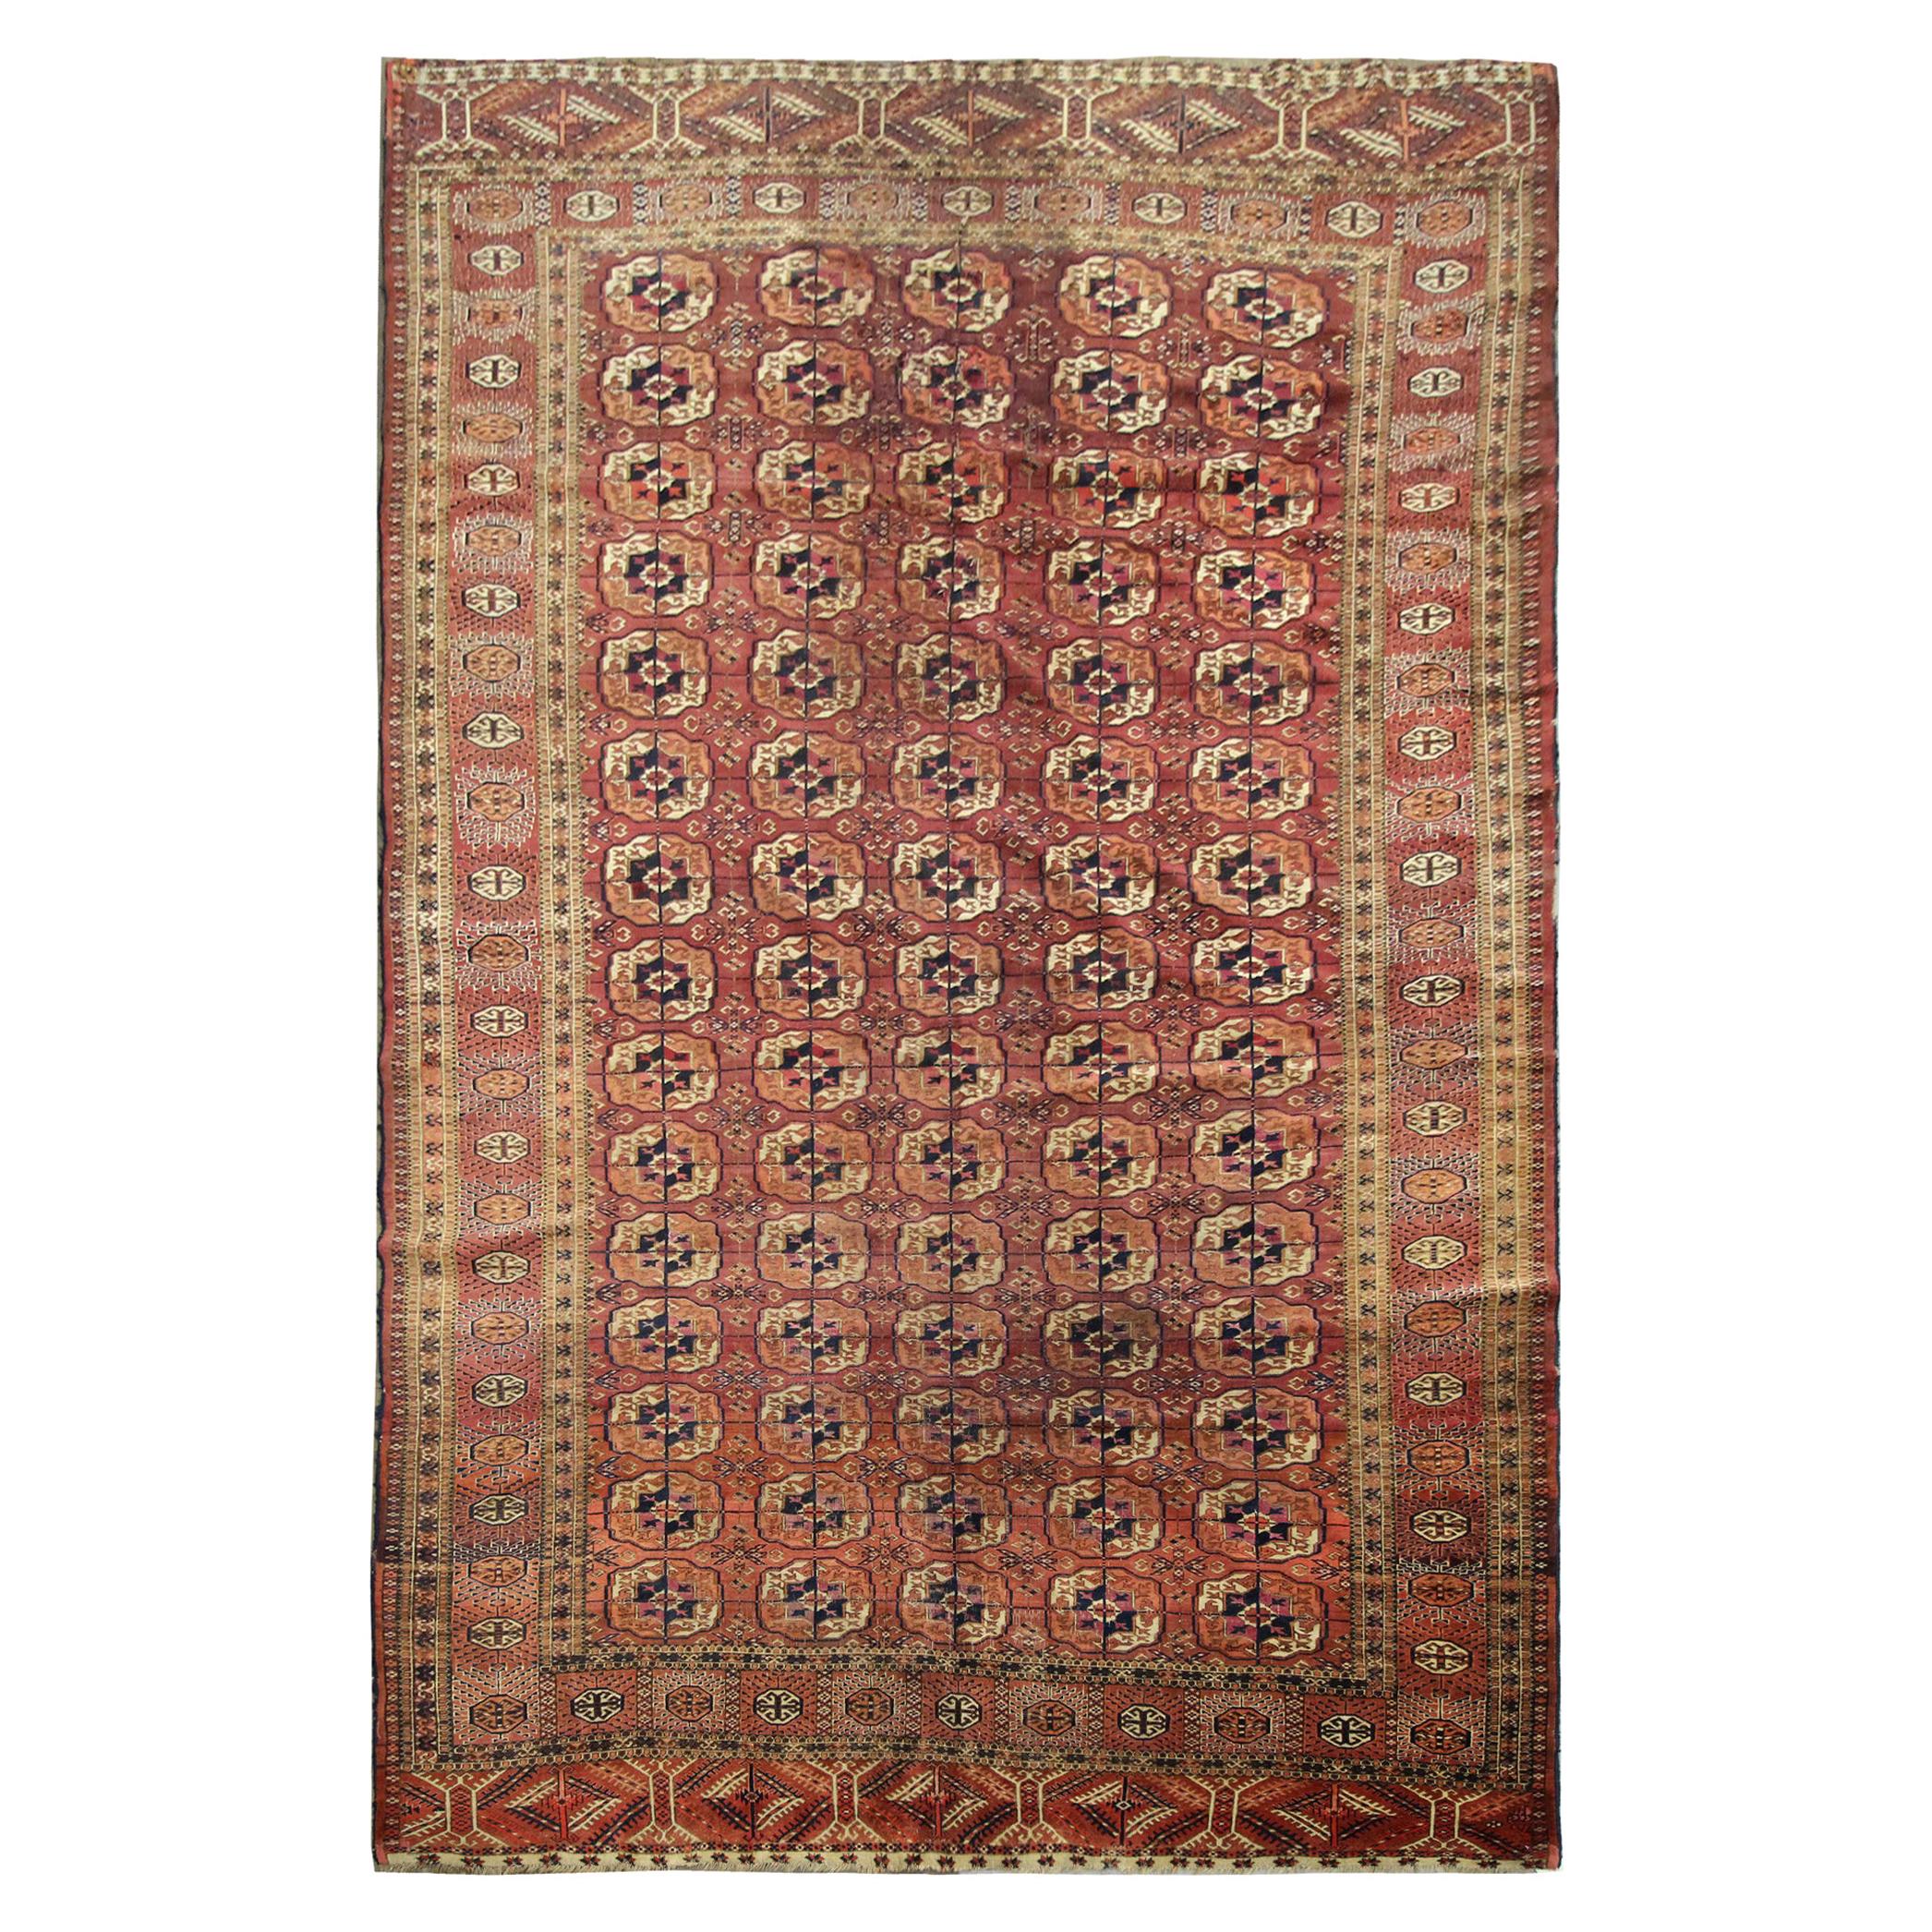 Turkmen Area Rug Bokhara Carpet Large Antique Handwoven Carpet